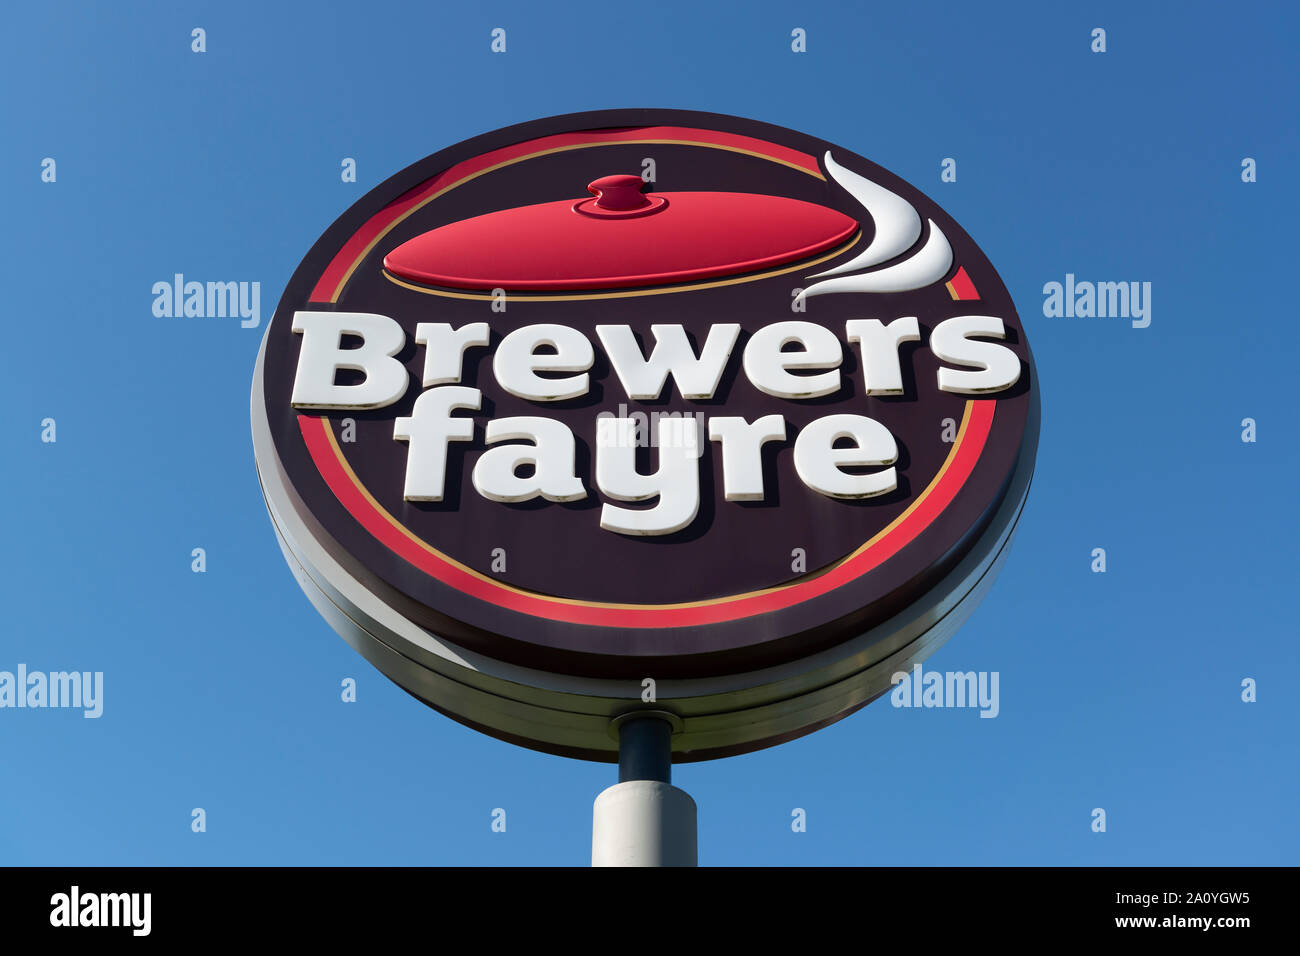 La segnaletica che indica un ramo della catena di ristoranti Brewers Fayre. Foto Stock